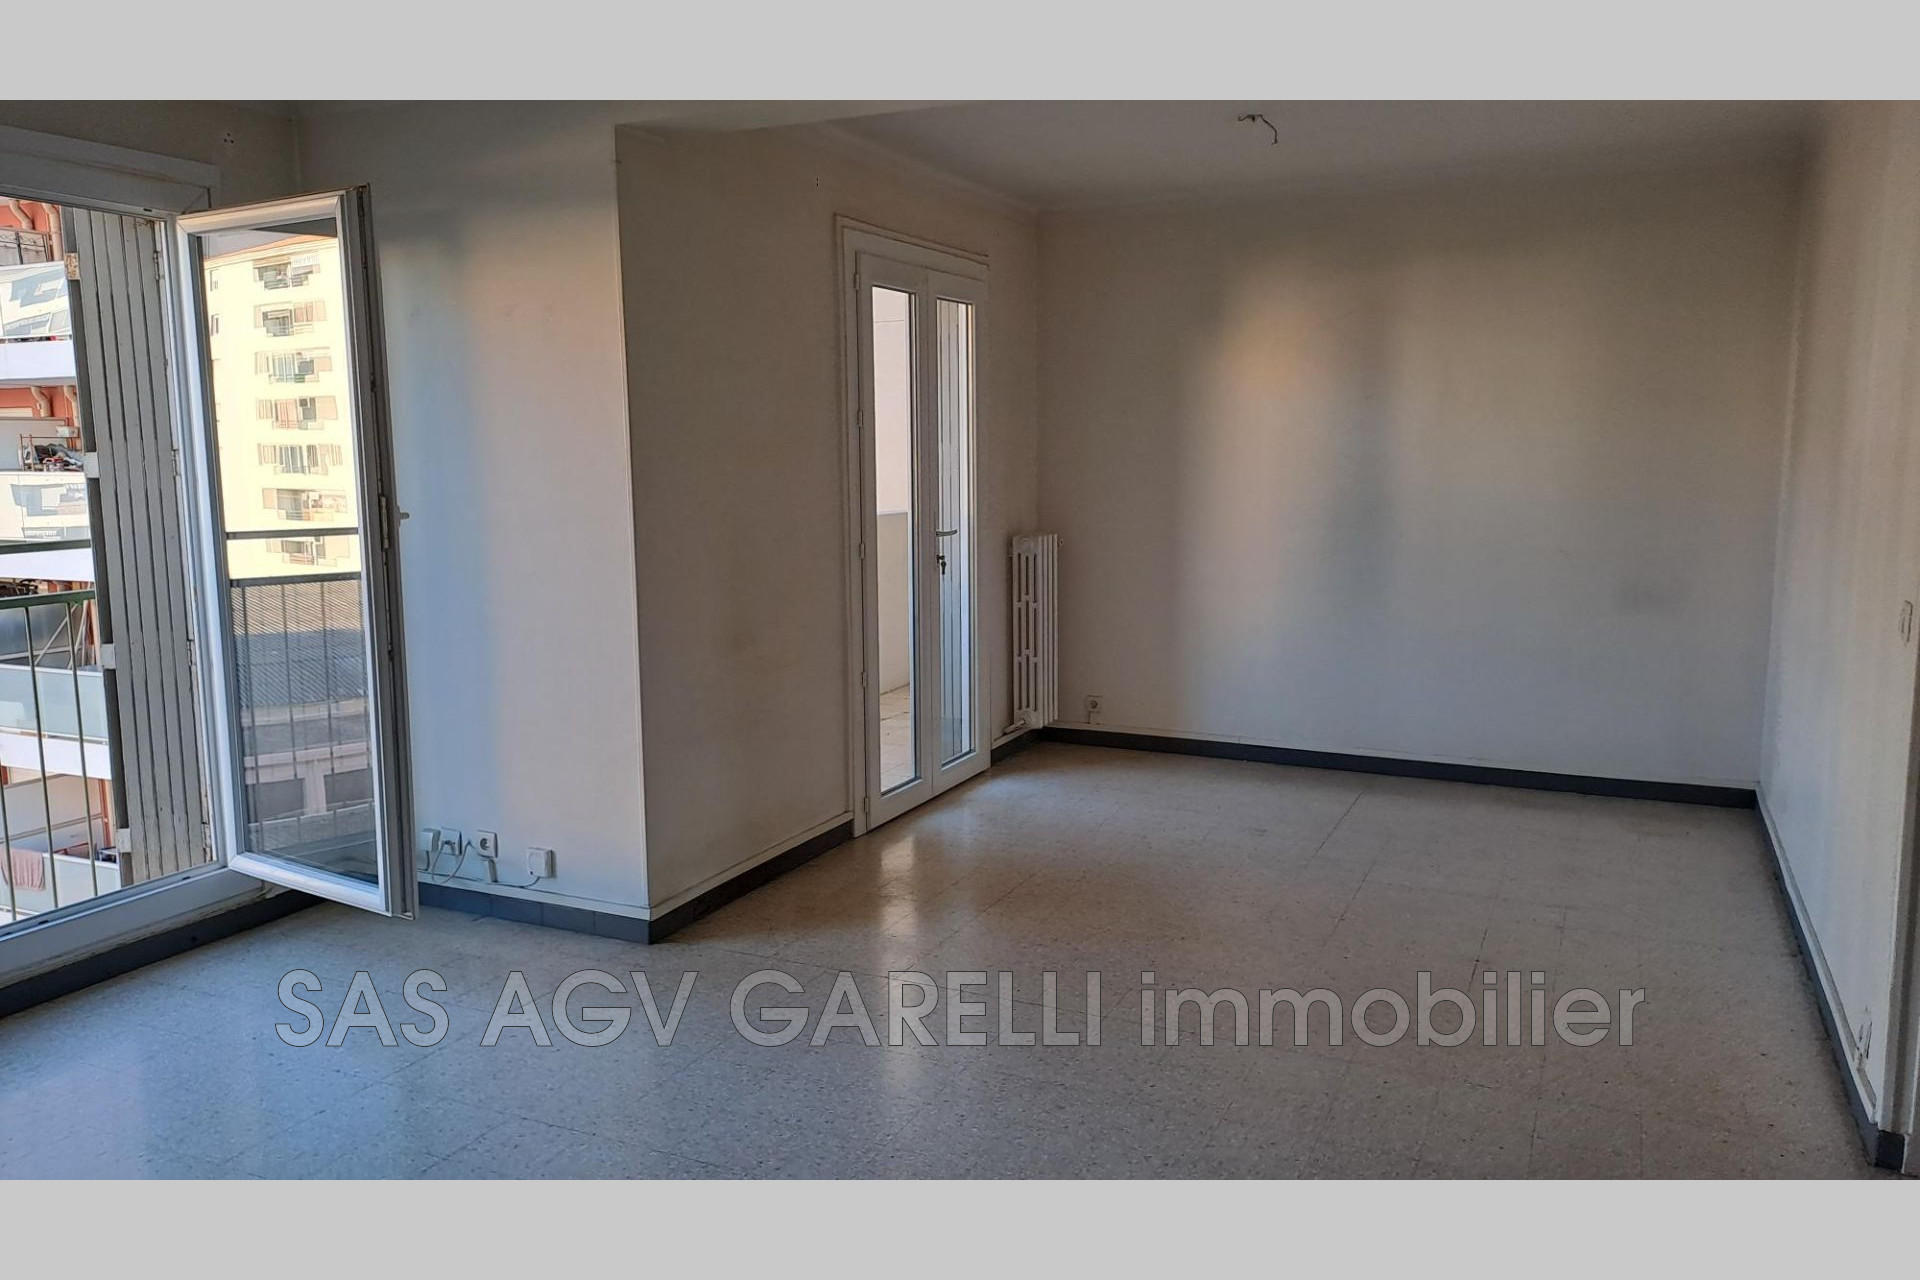 Vente Appartement 83m² 4 Pièces à Toulon (83000) - Agv Garelli Immobilier